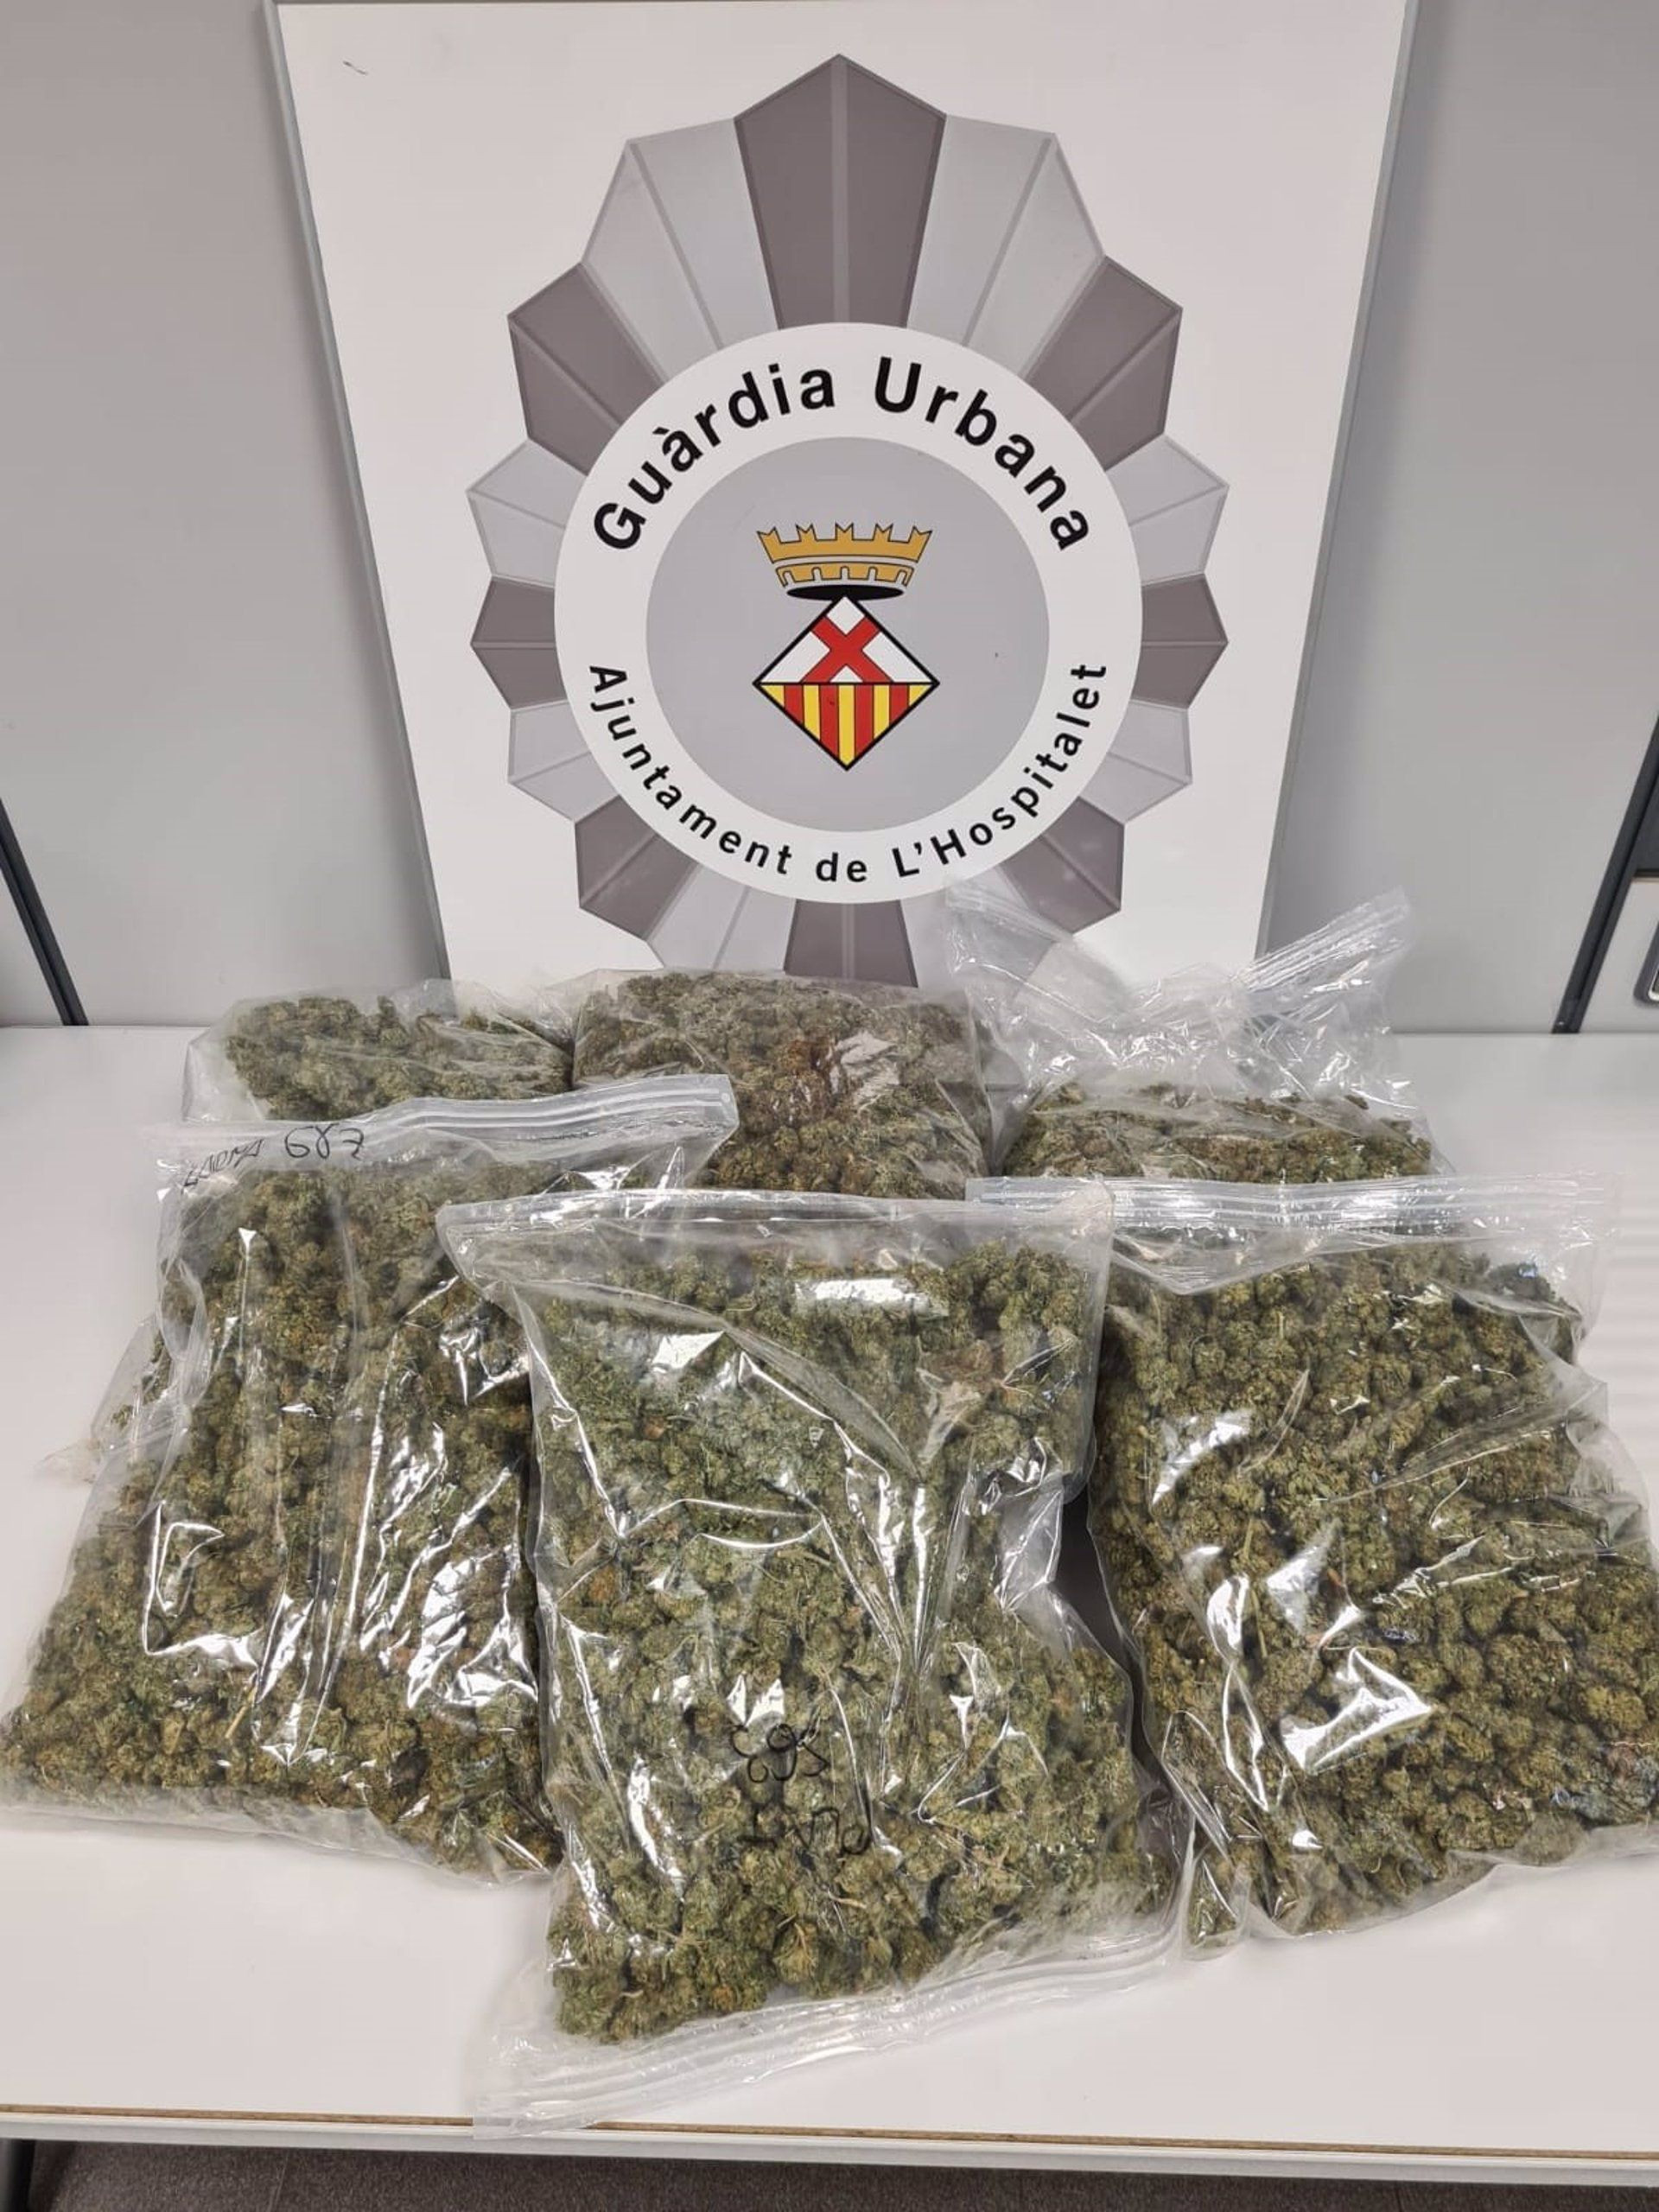 Kilos de marihuana incautada durante un operativo policial en L'Hospitalet de Llobregat / GUARDIA URBANA HOSPITALET